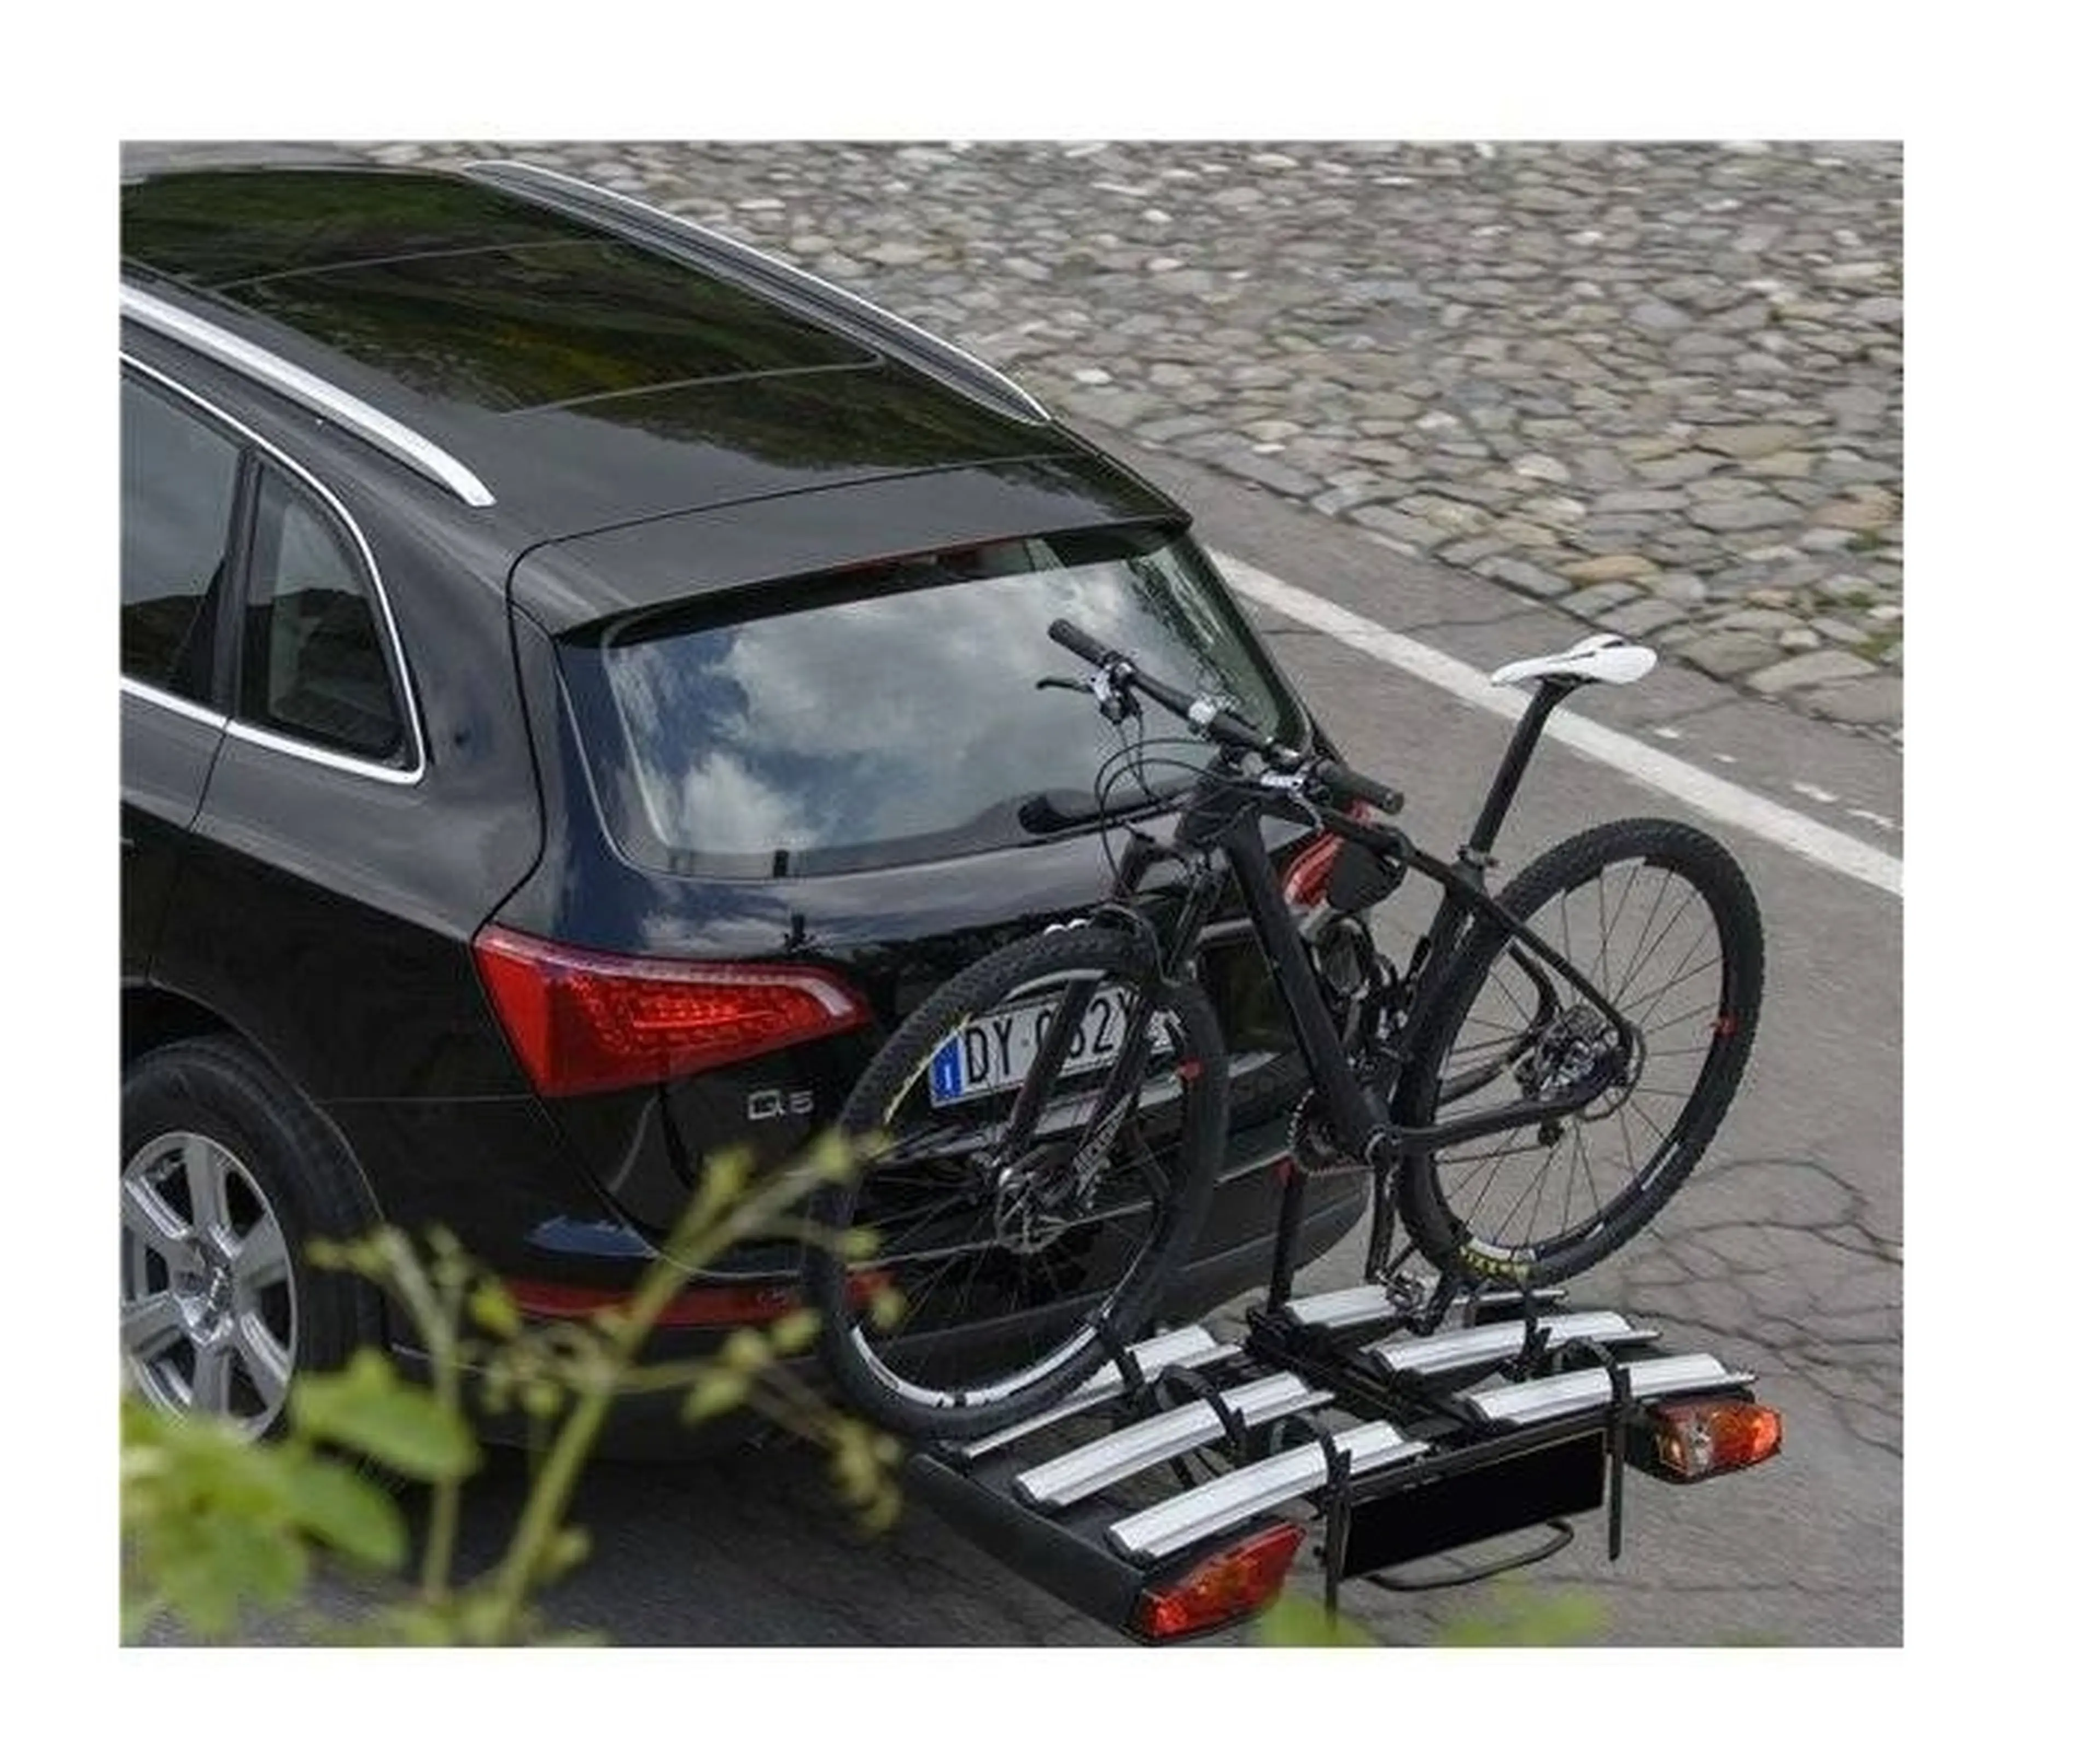 Image Suport biciclete menabo antares plus pentru 3 biciclete cu prindere pe carlig